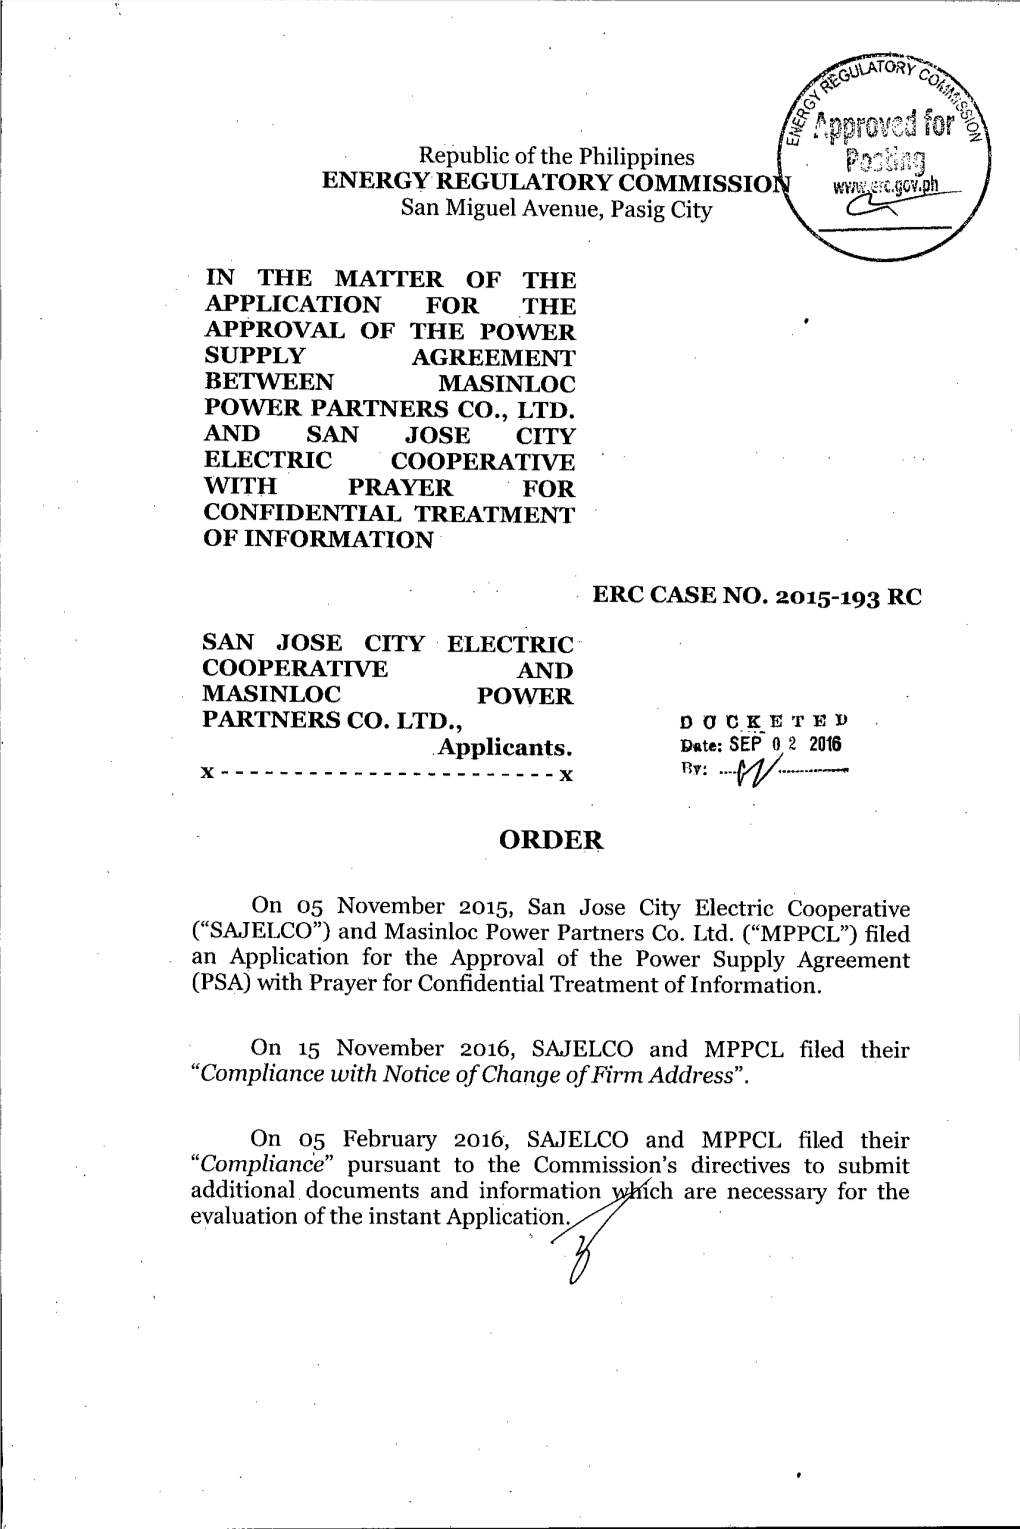 Order, ERC Case No. 2015-193 RC